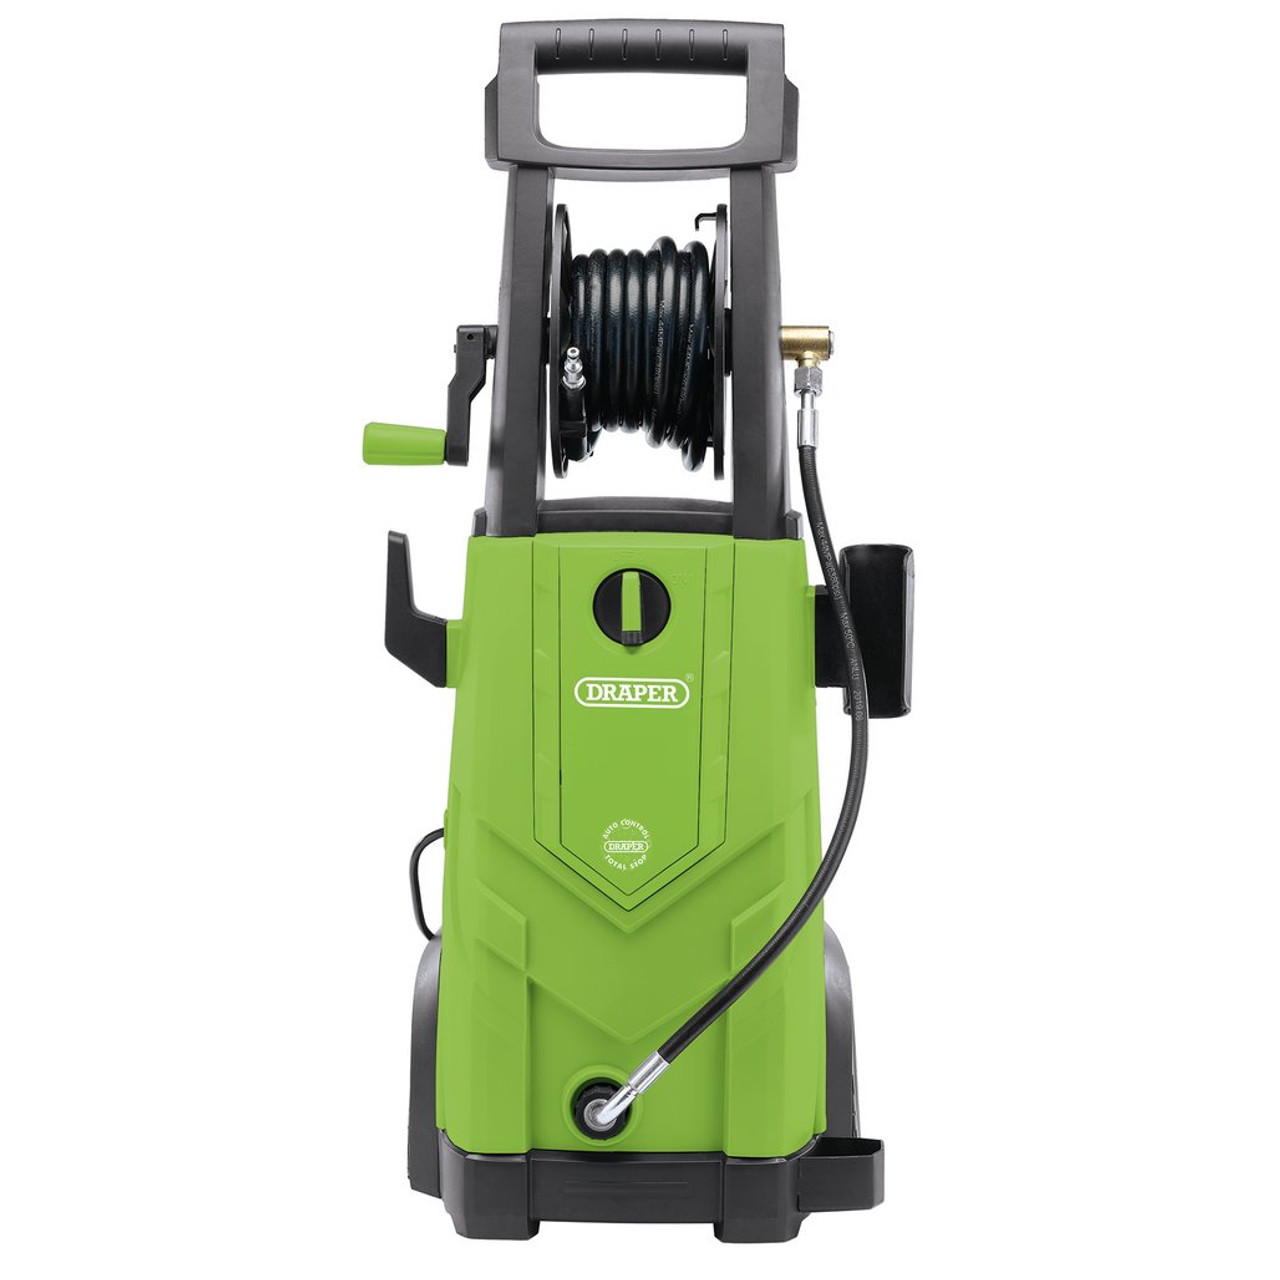 230V Pressure Washer, 2200W, 165Bar, Green (03095)